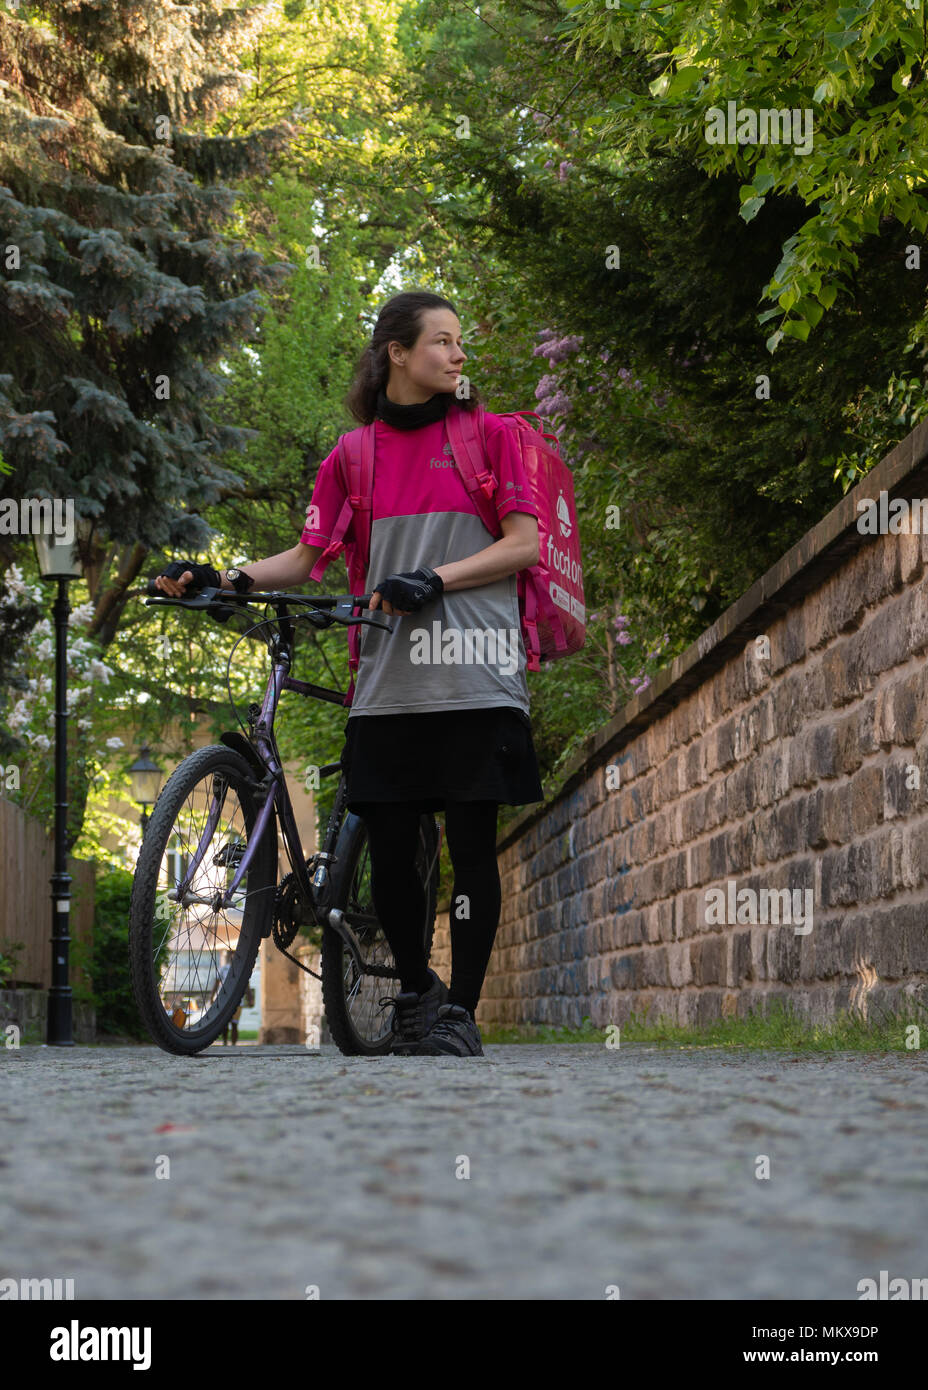 Dresden, Germania: Cibo servizio di consegna. Un dipendente foodora camminando la sua bici mentre in attesa di nuovi ordini per venire a. Foto Stock